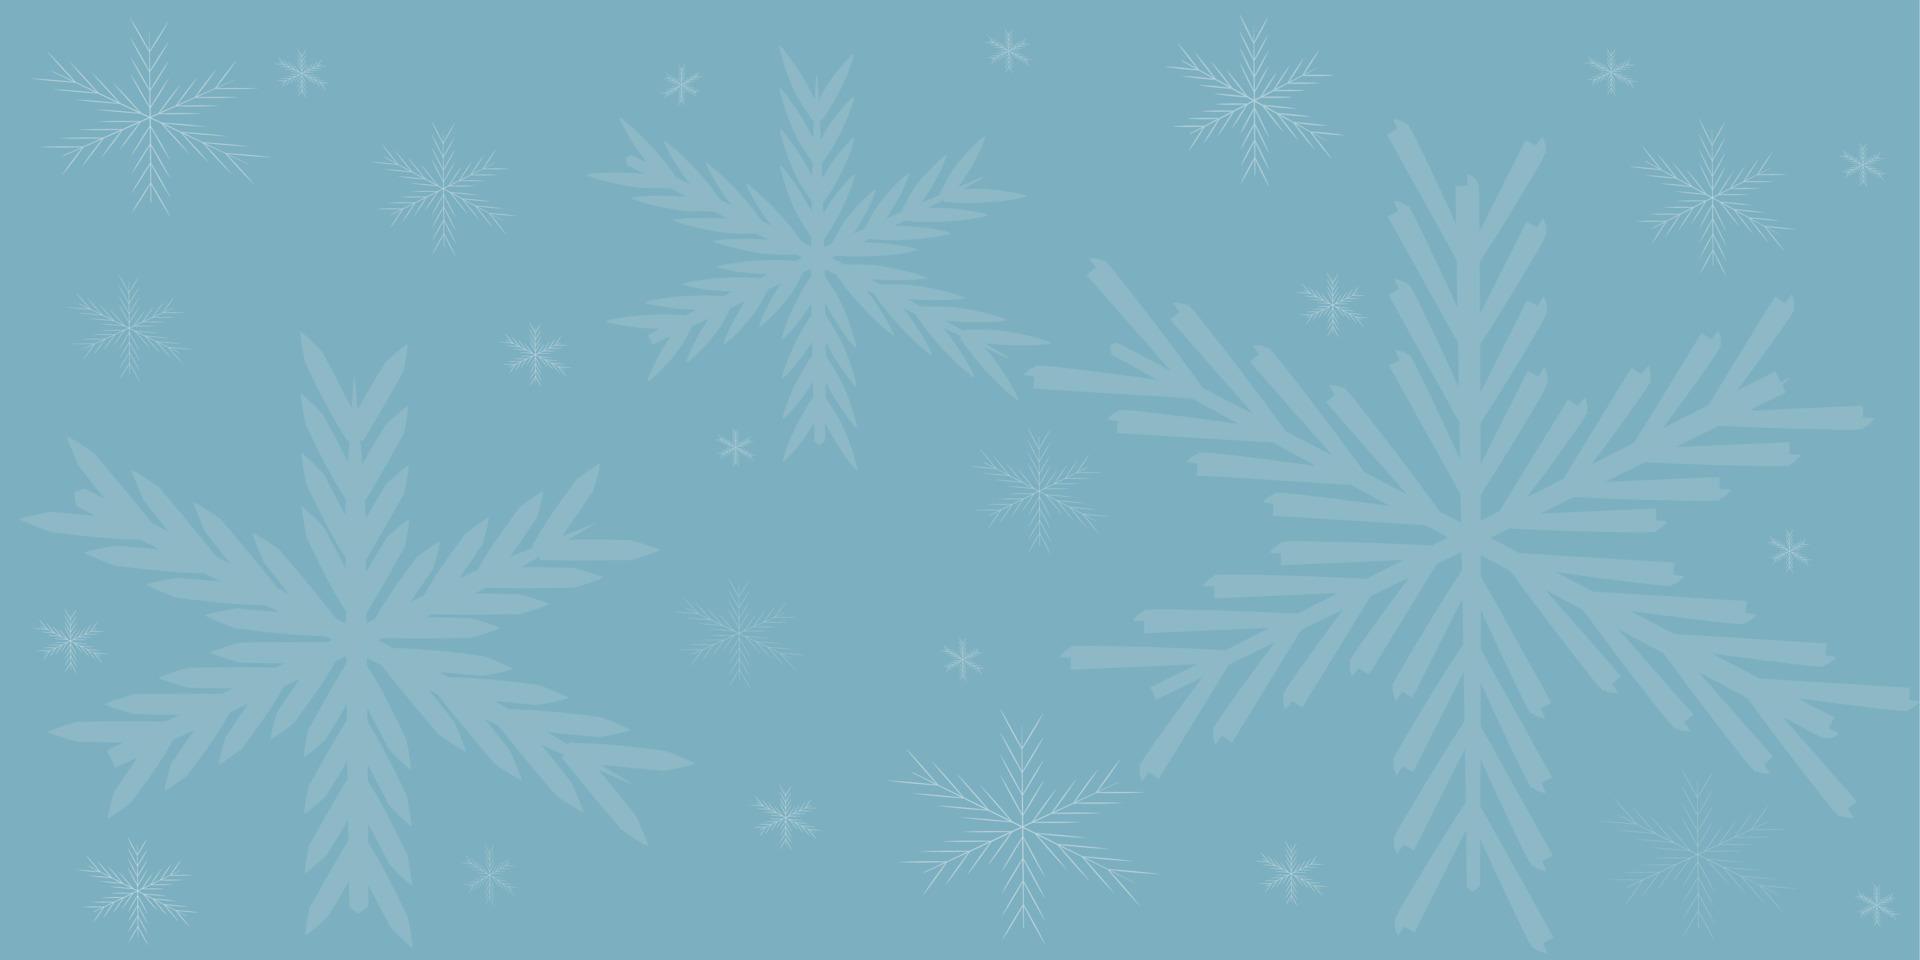 flocons de neige blancs sur fond bleu joyeux noël vecteur